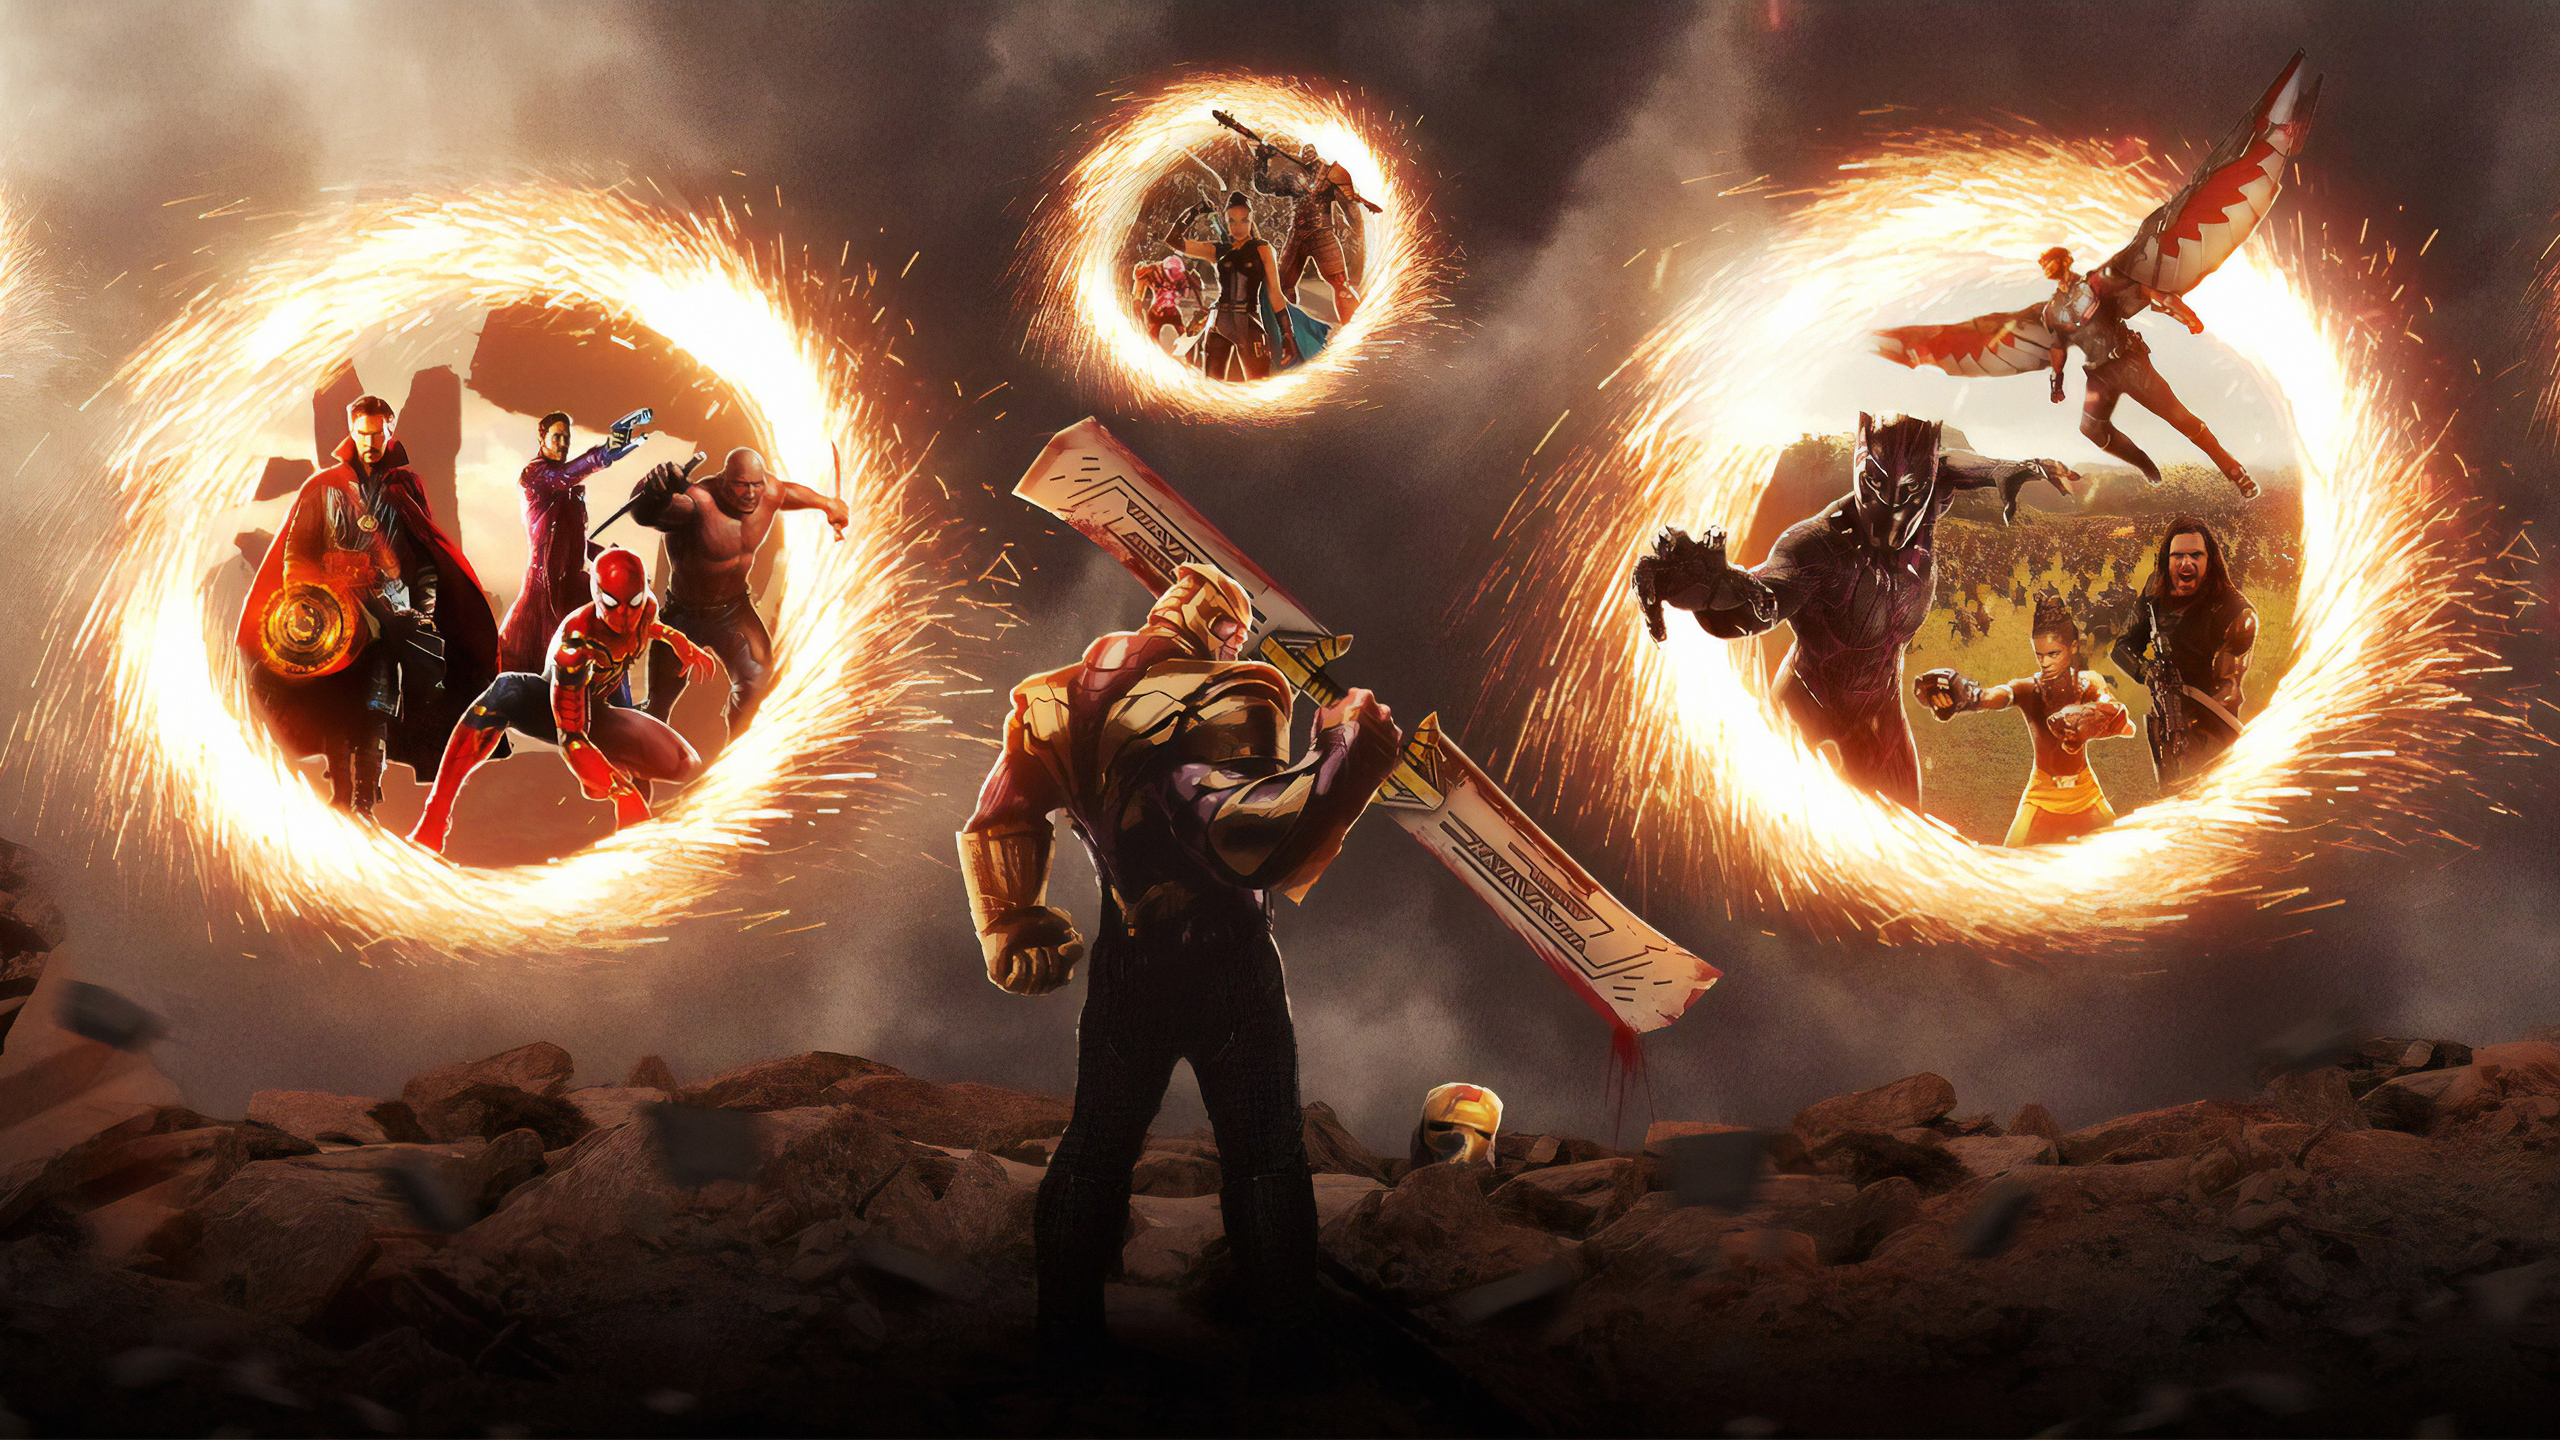 Avengers Endgame Final Battle Artwork Wallpapers